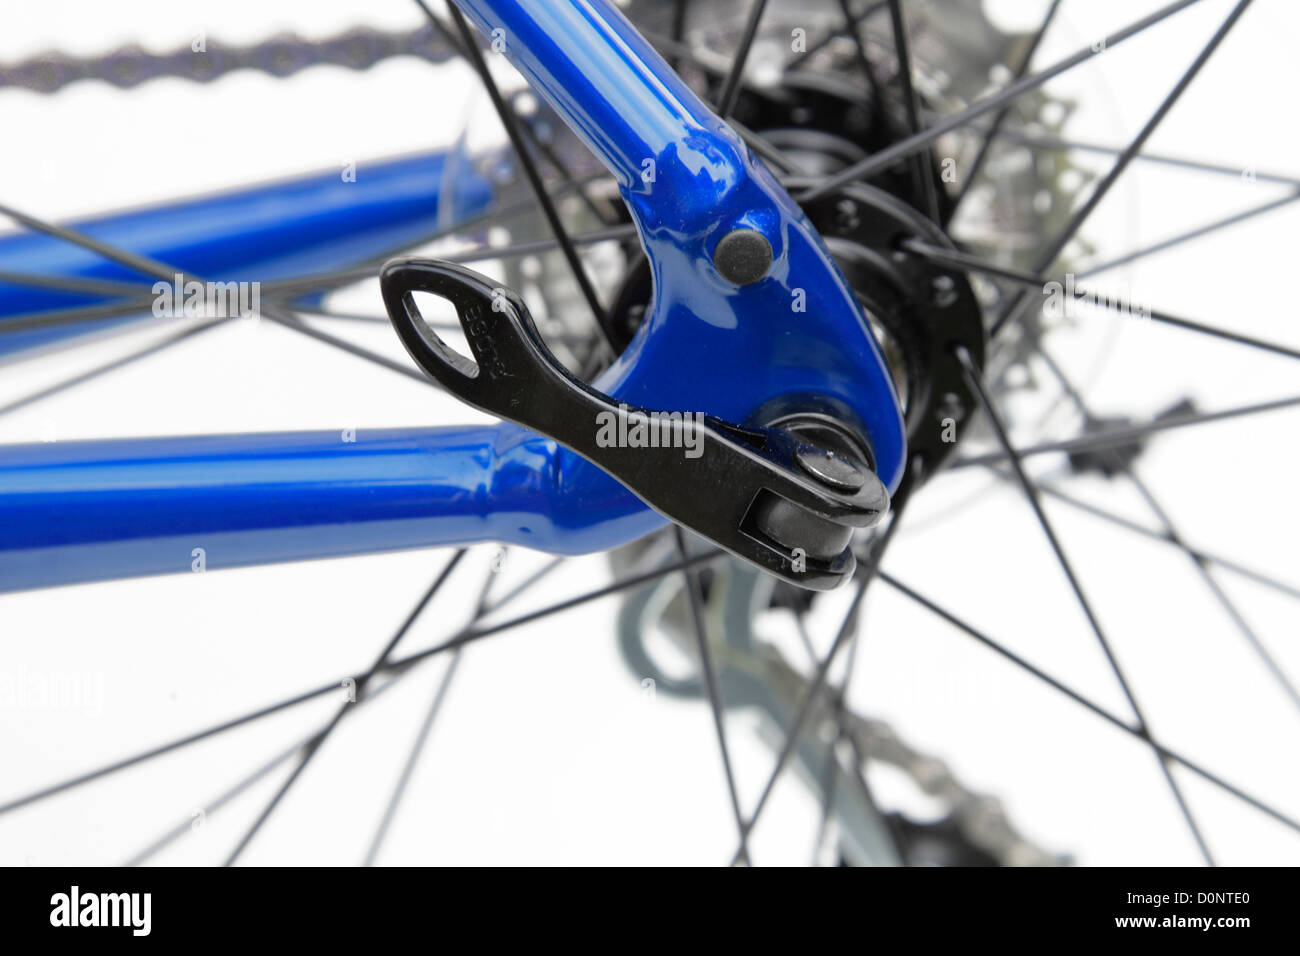 Bicicleta de carreras bicicleta rueda trasera eje de la palanca de  liberación rápida desviador de engranajes engranajes transmisión de cadena  Fotografía de stock - Alamy